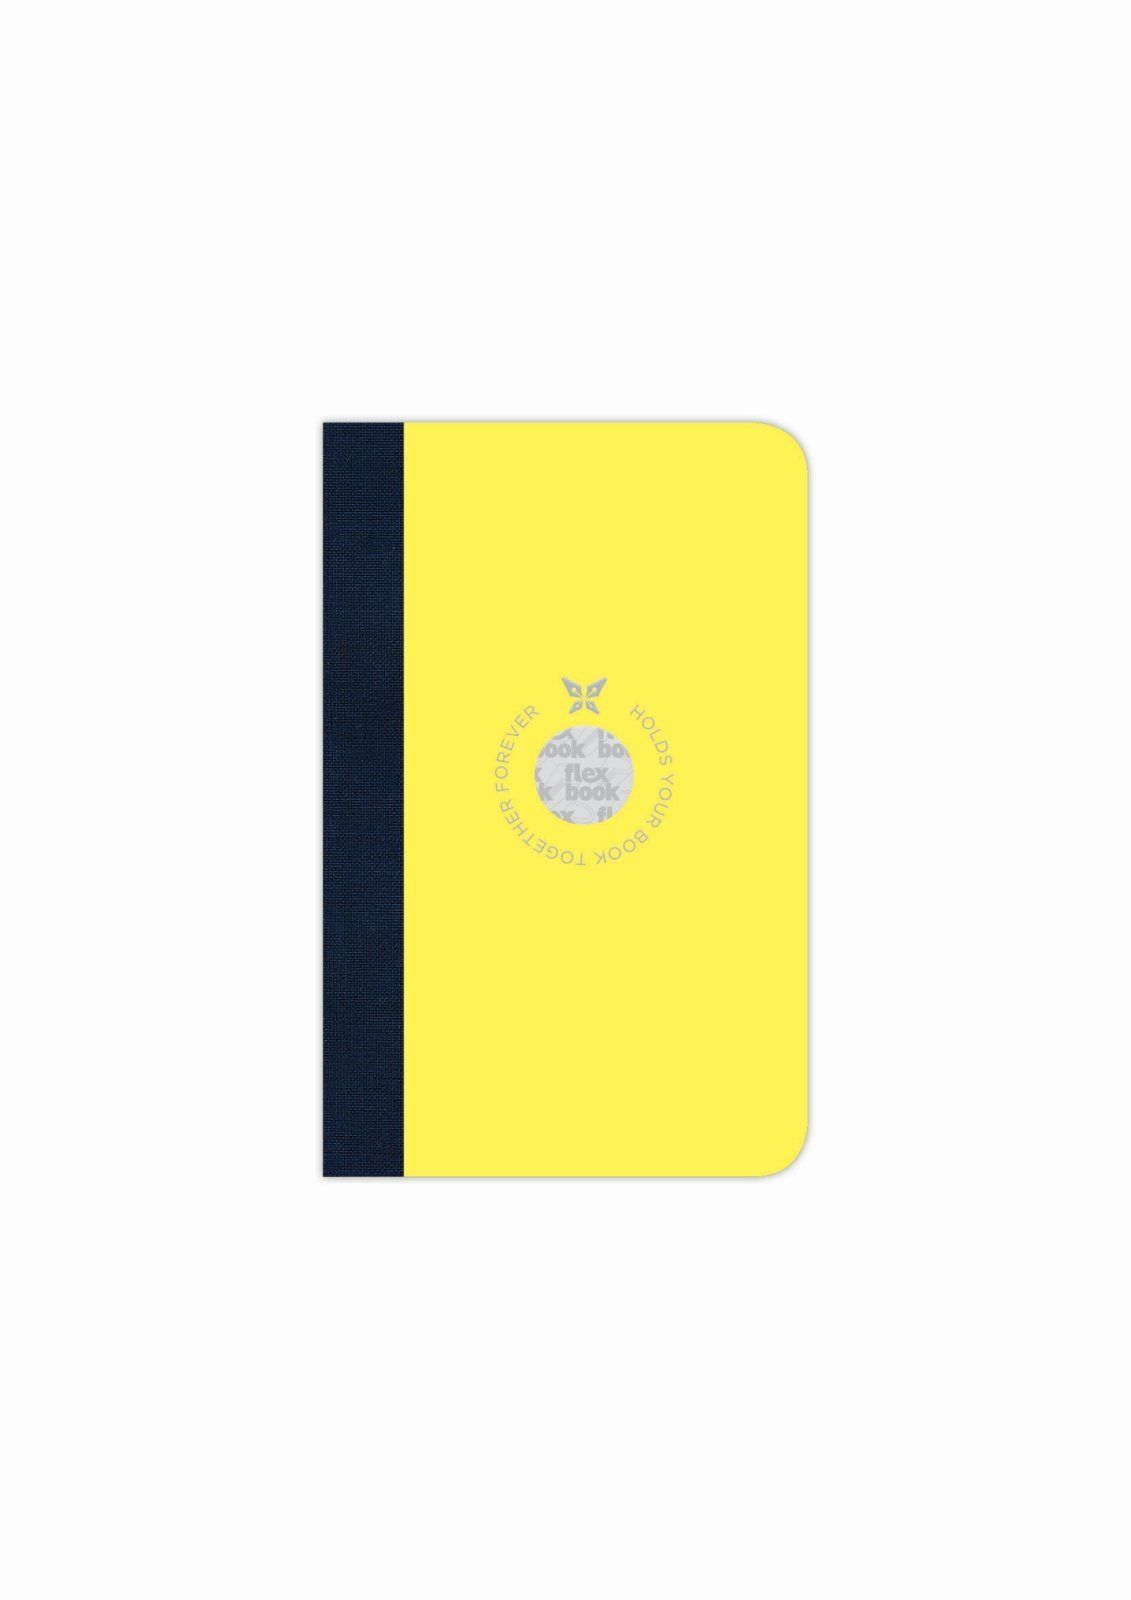 160 9*14 Flexbook Notizbuch viele Liniert cm Flexbook Ökopapiereinband Gelb Smartbook Größen/Fa Seiten